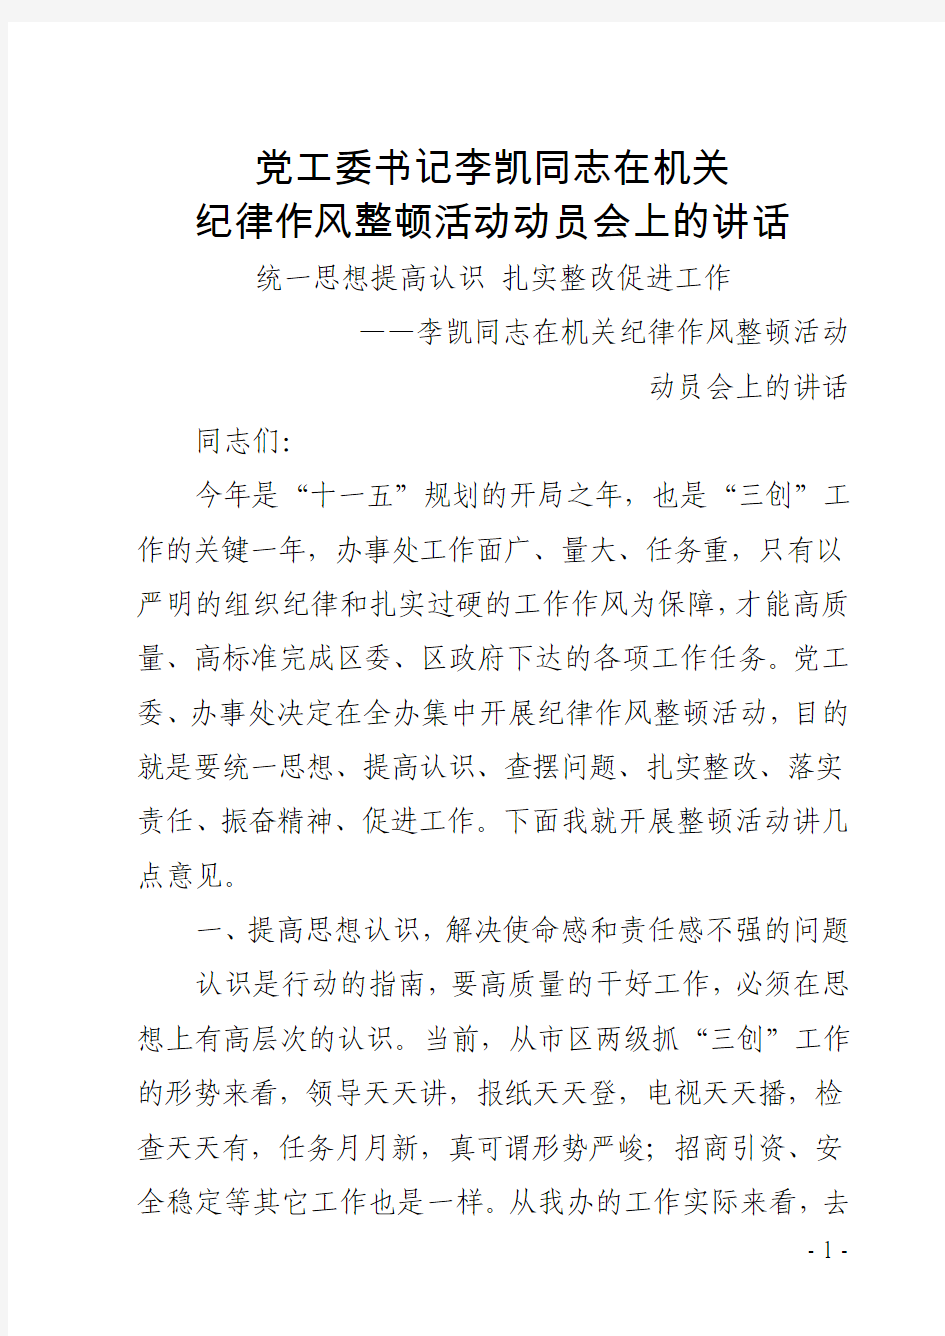 党工委书记李凯同志在机关纪律作风整顿活动动员会上的讲话